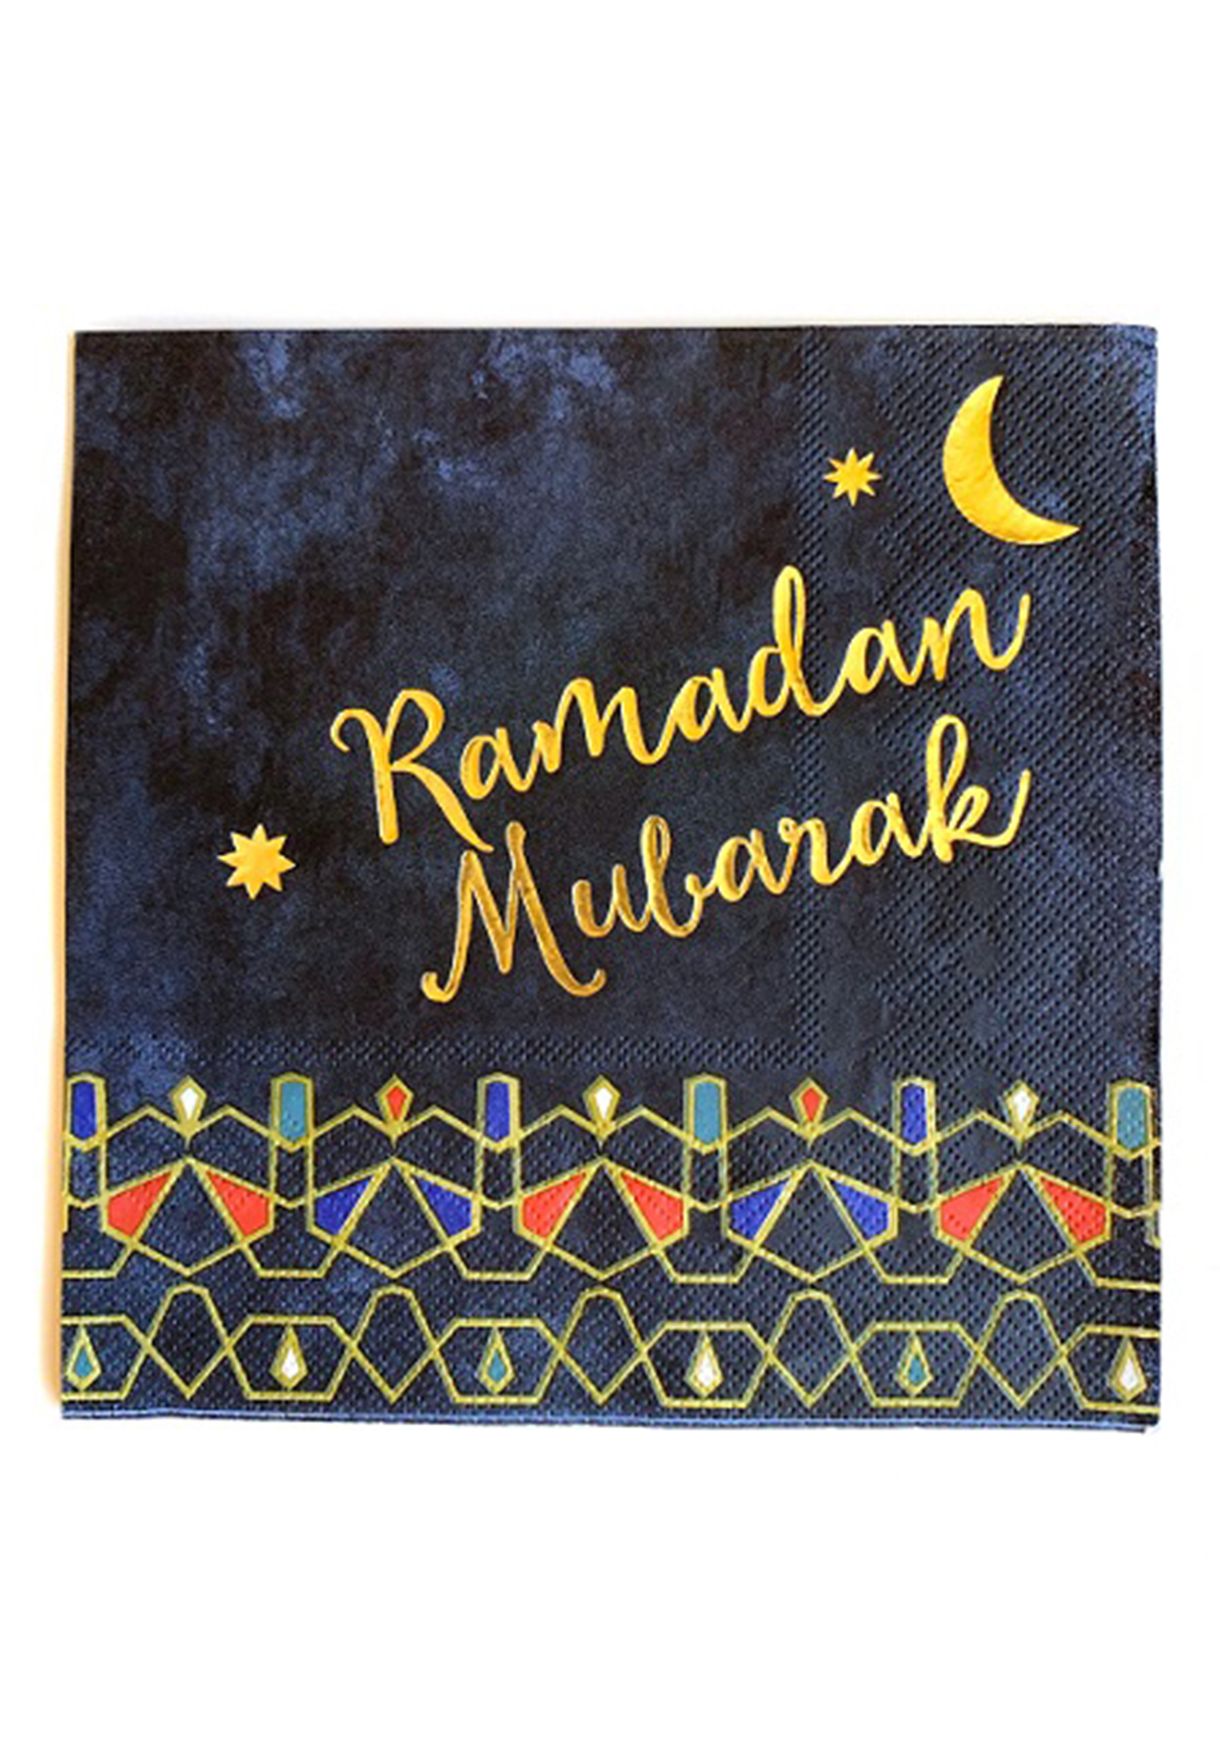 مجموعة مناديل ورقية مزينة بكتابة رمضان مبارك